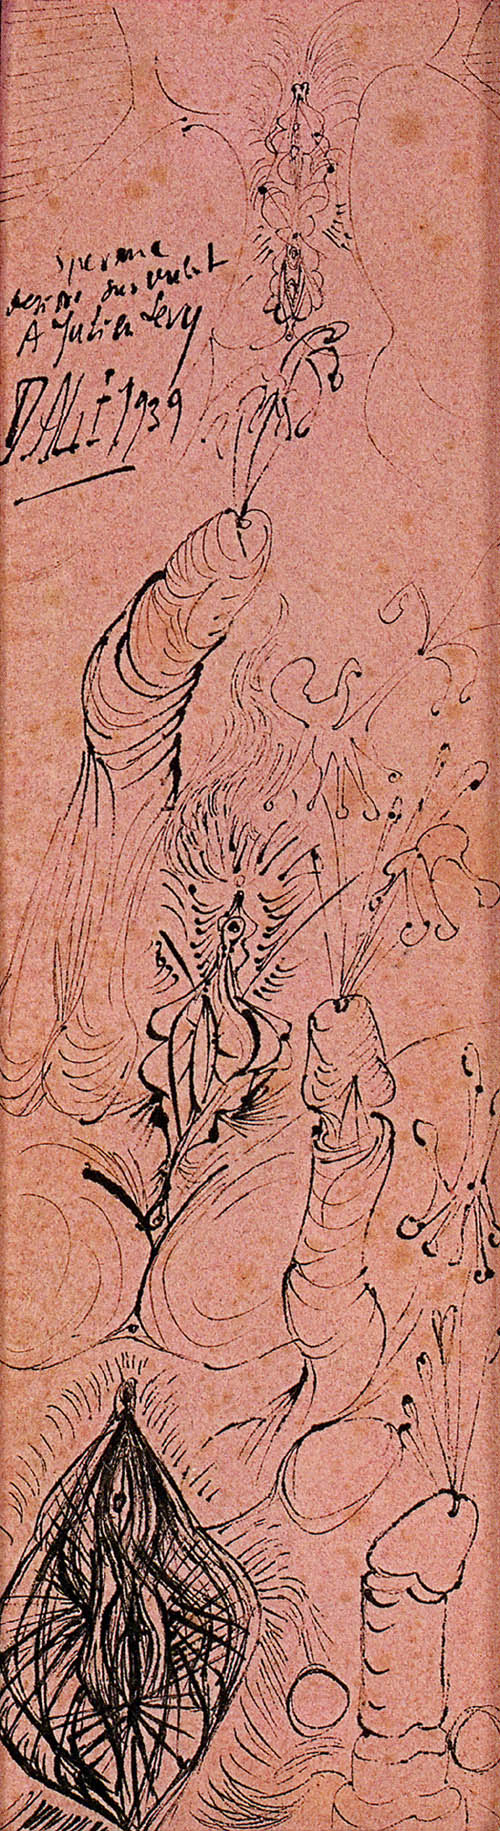 Salvador Dali - Sperme (Sperm) - 1939 ink on pink paper